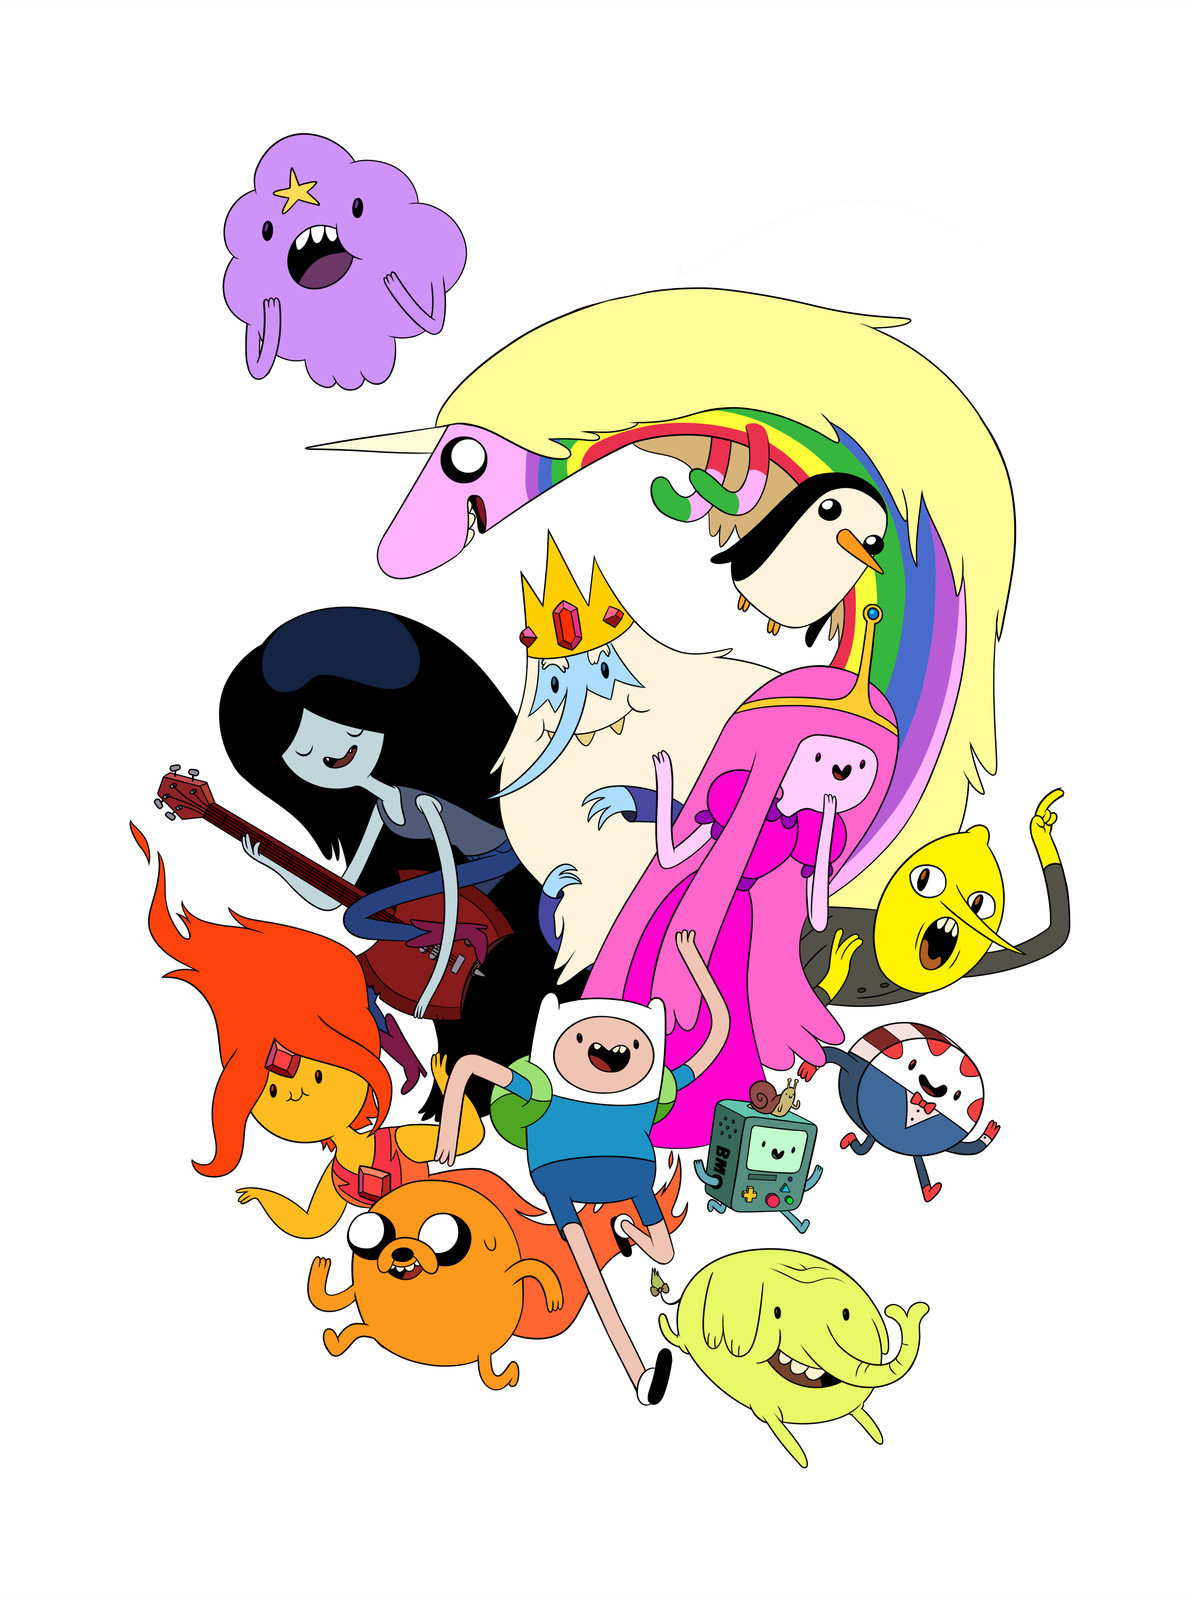 Adventure Time : Les Pirates De La Terre de Ooo